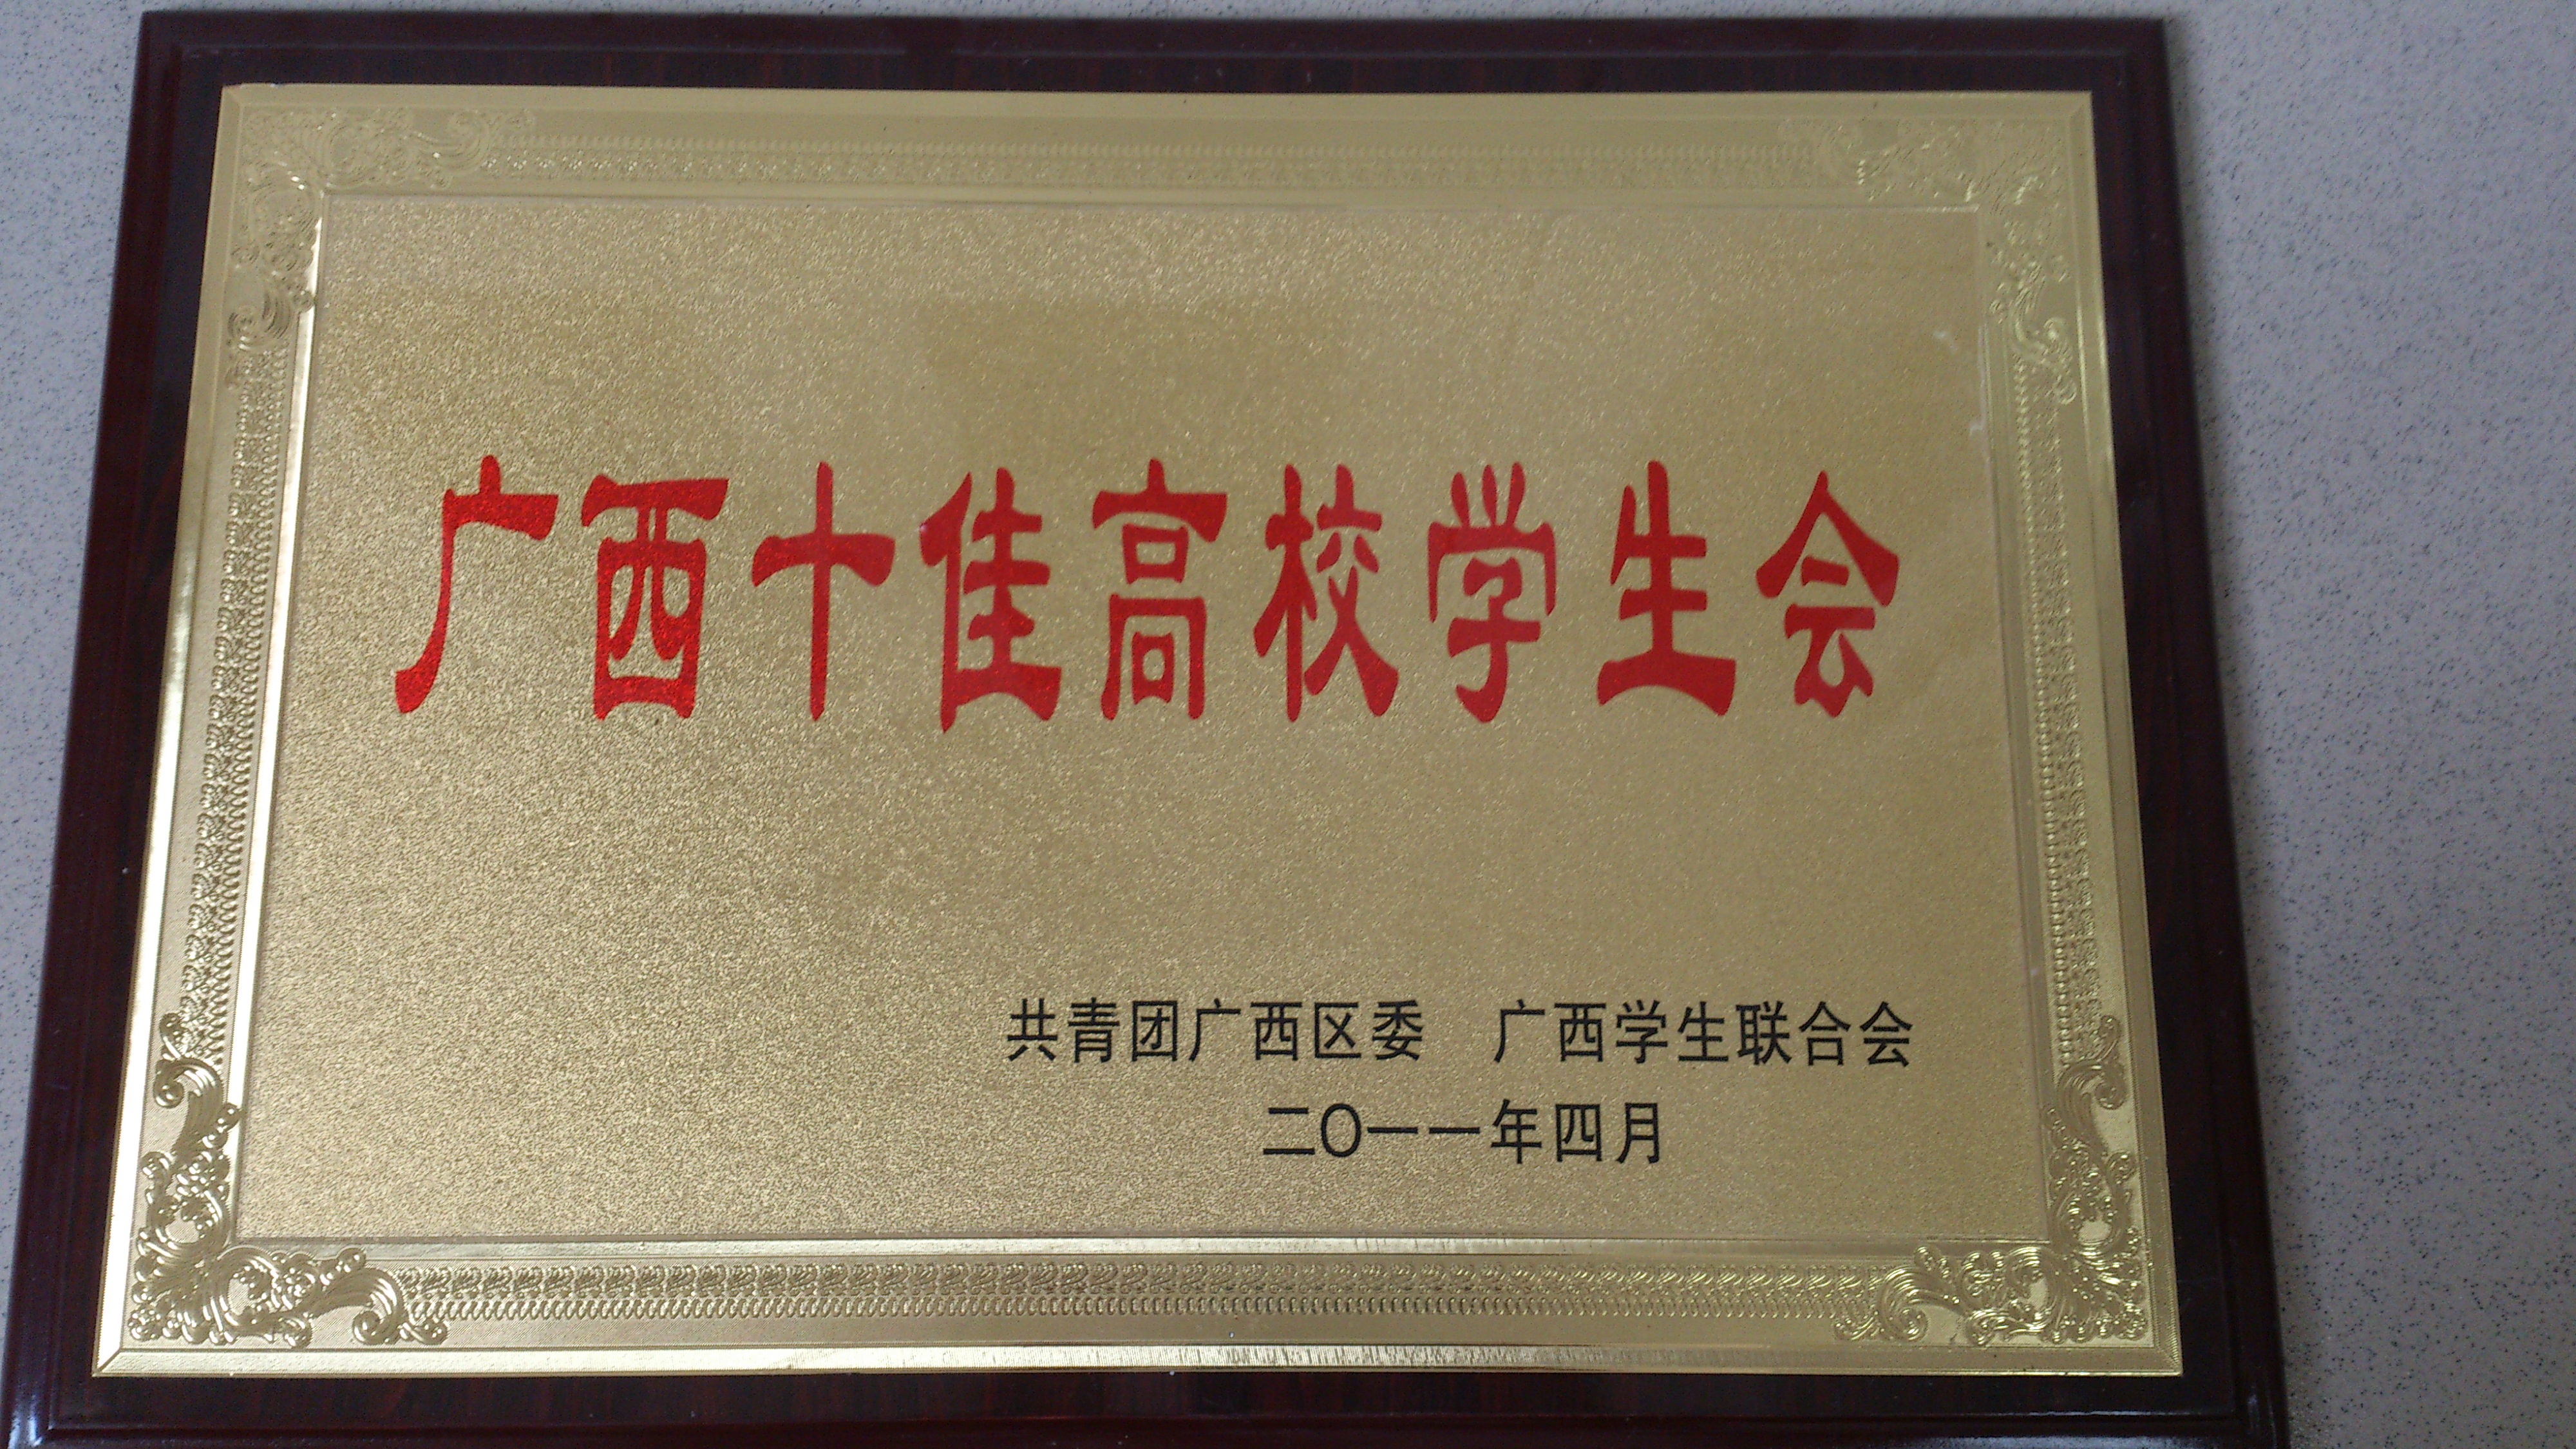 广西十佳高校学生会 2011年  自治区级